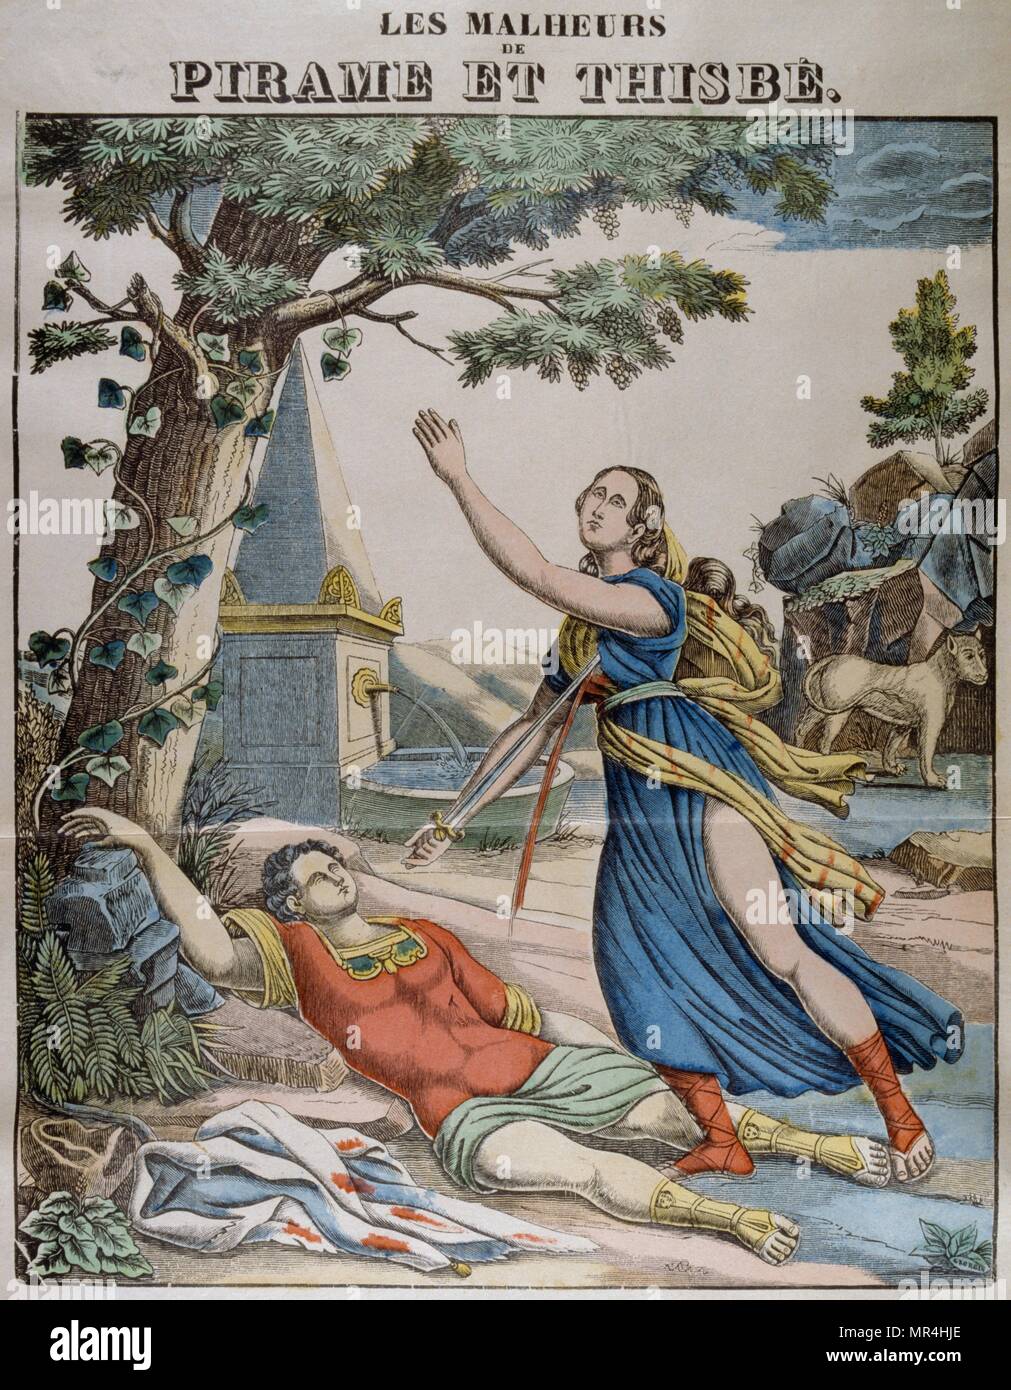 Farbige Abbildung: Pyramus und Thisbe, ein paar unglücklichen Liebhaber, dessen Geschichte ist Teil von Ovids Metamorphosen. Französisch ca. 1850 Stockfoto